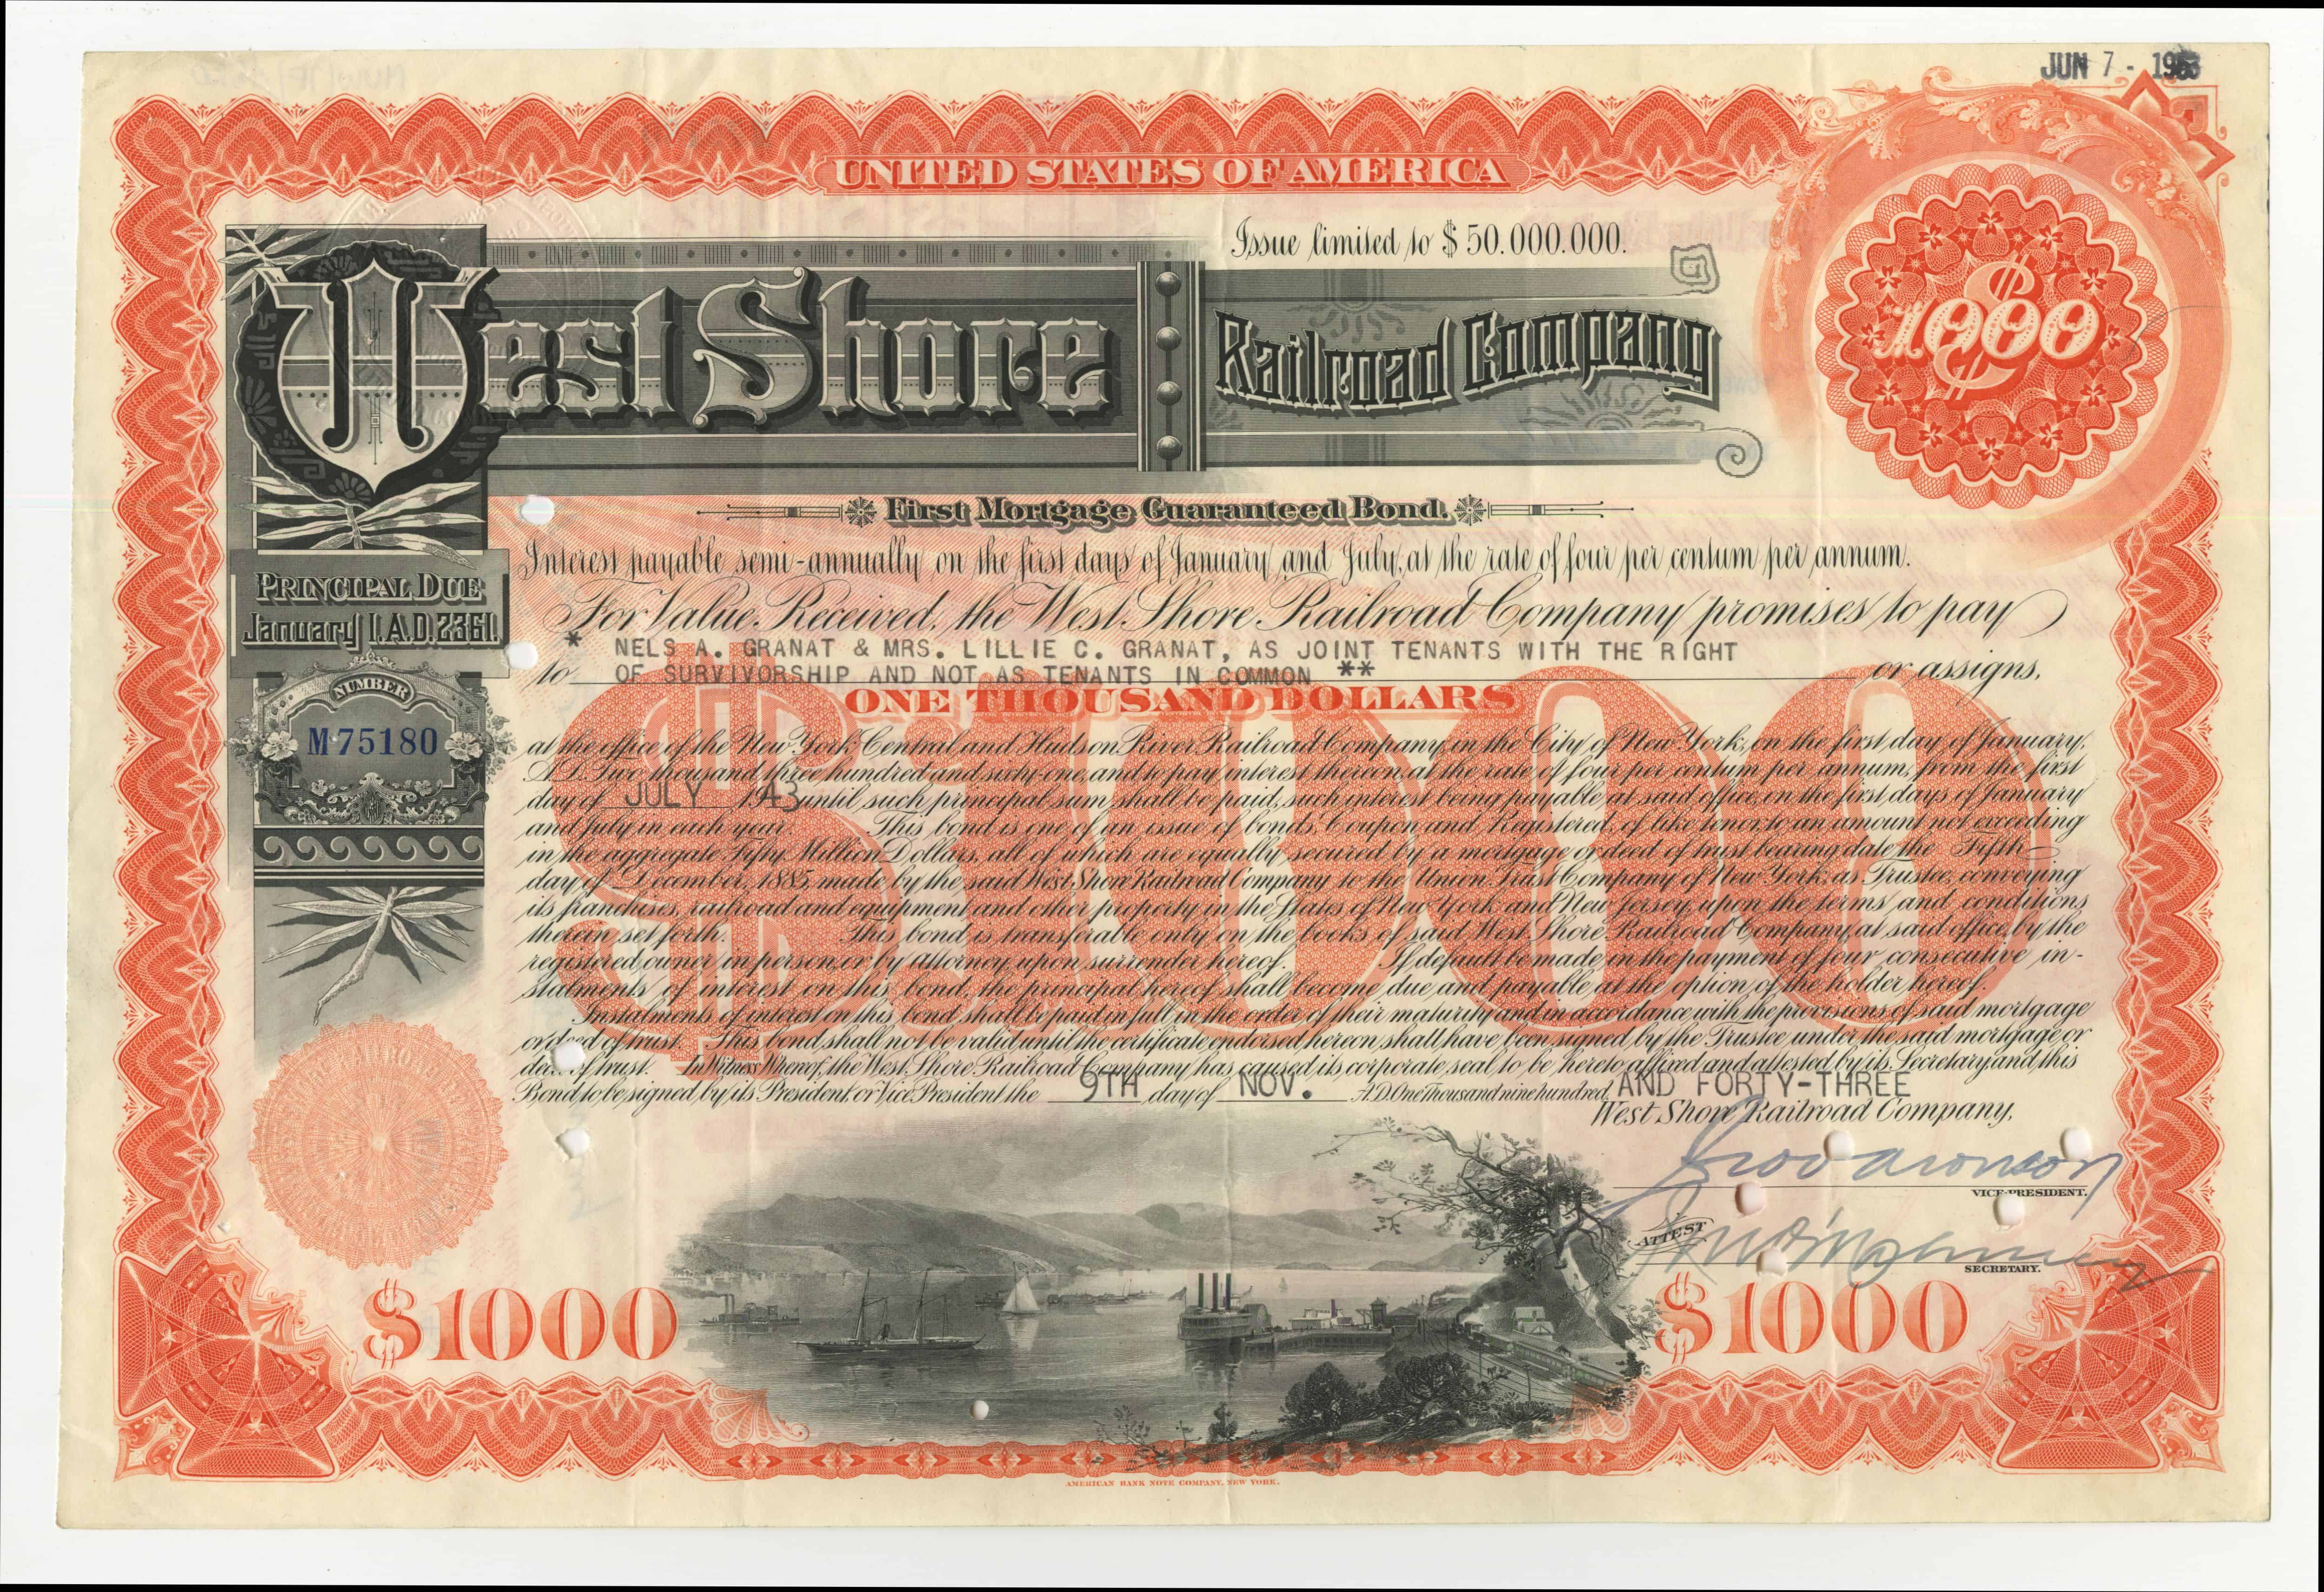 Obligacje West Shore Railroad Company o wartości 1000 dolarów z dnia 9 listopada 1943 roku